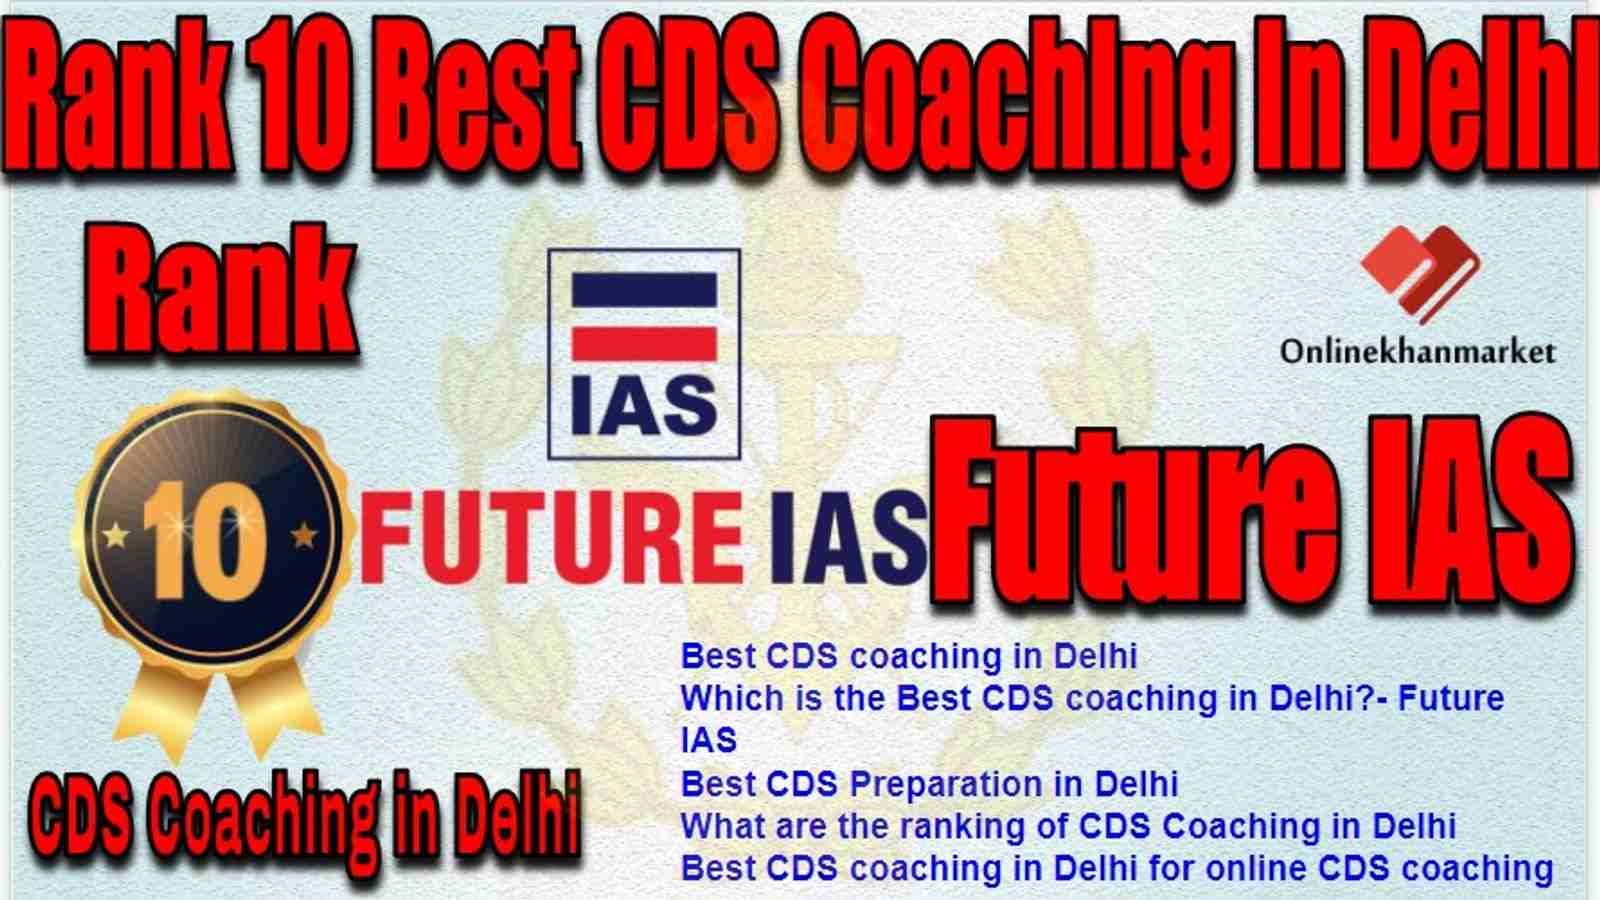 Rank 10 Best CDS Coaching in delhi